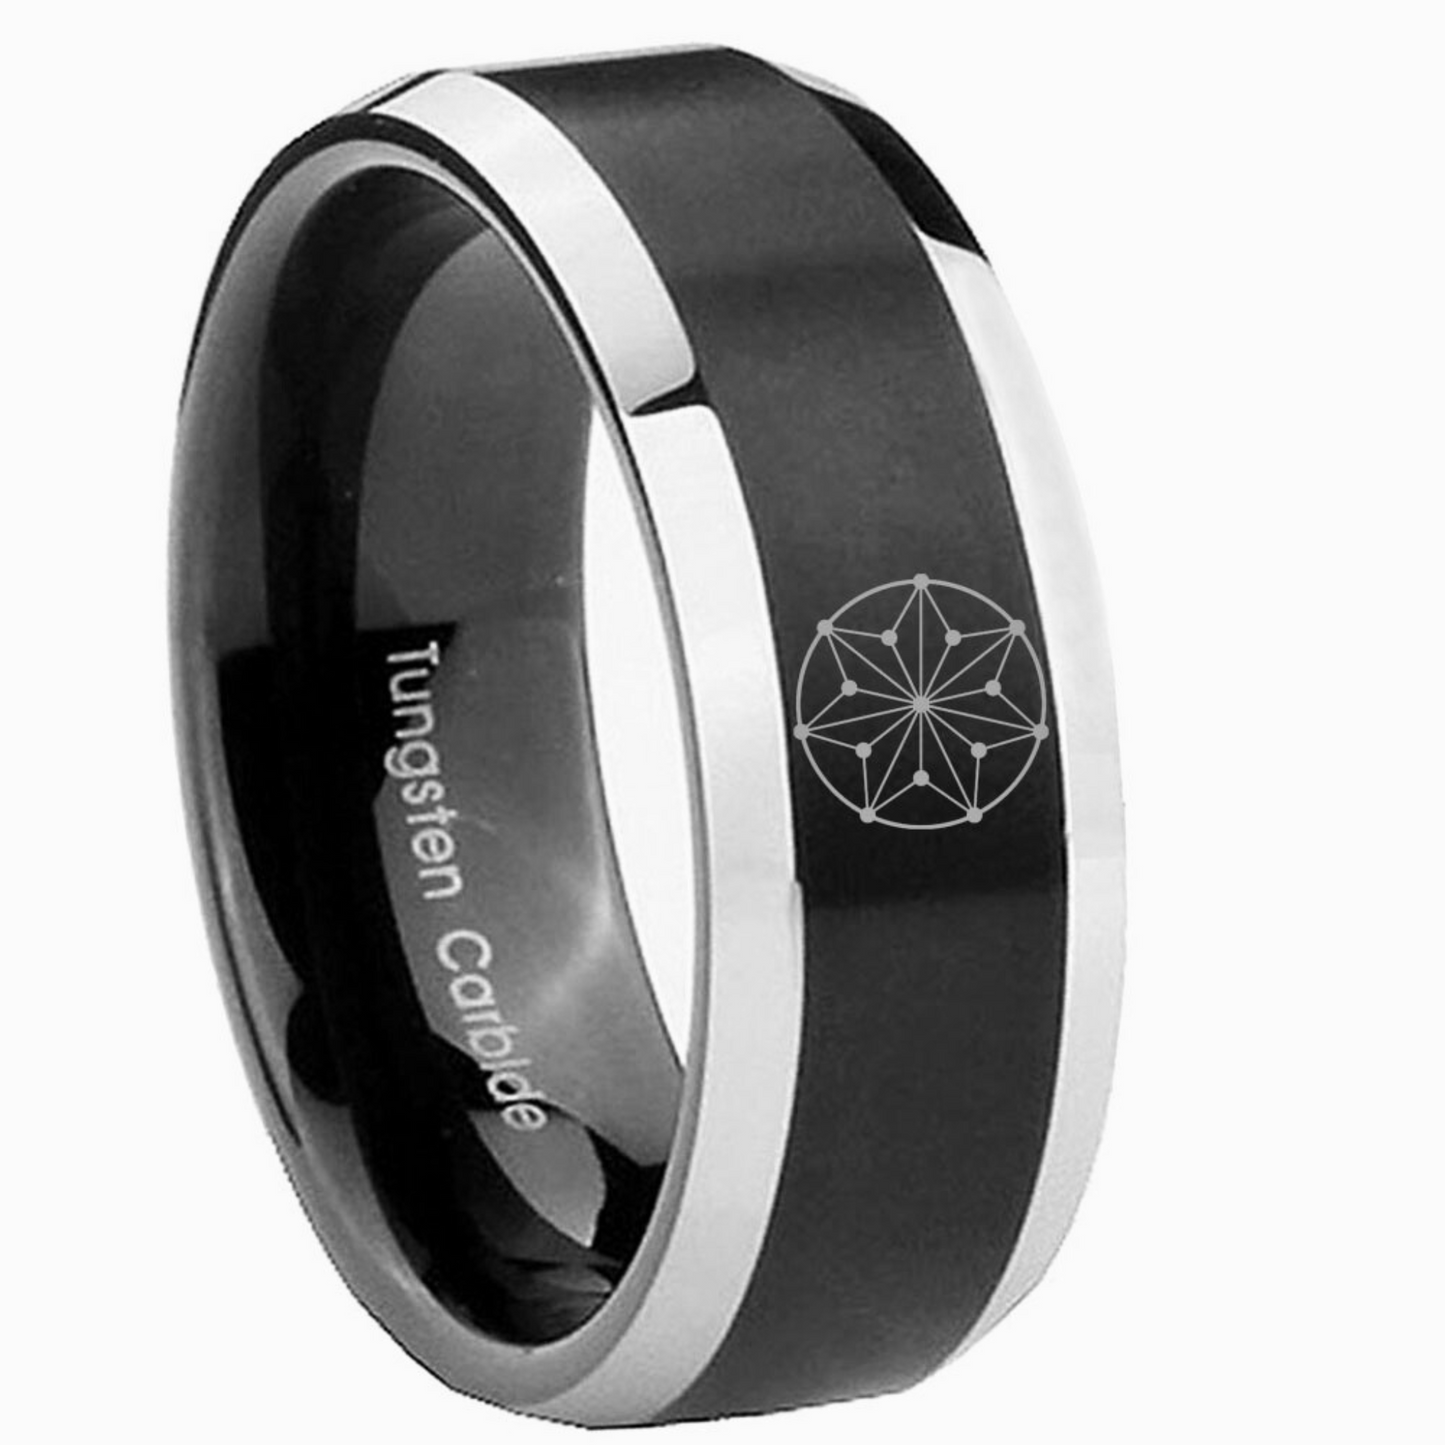 Circle - Silver/Black Tungsten Carbide Ring